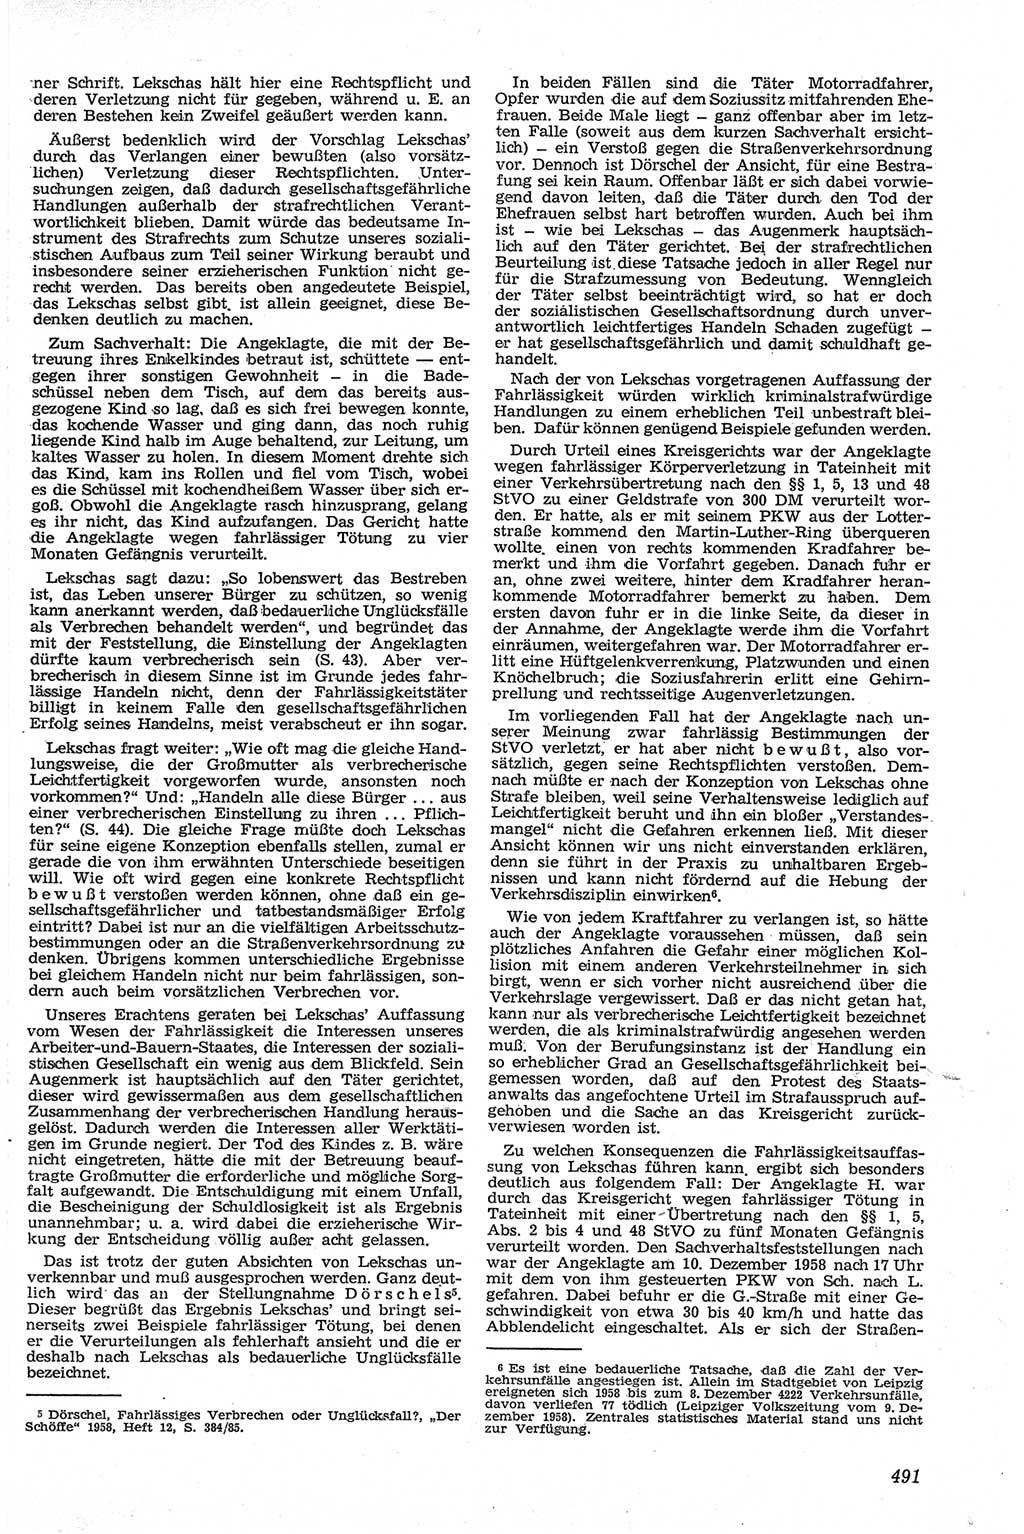 Neue Justiz (NJ), Zeitschrift für Recht und Rechtswissenschaft [Deutsche Demokratische Republik (DDR)], 13. Jahrgang 1959, Seite 491 (NJ DDR 1959, S. 491)